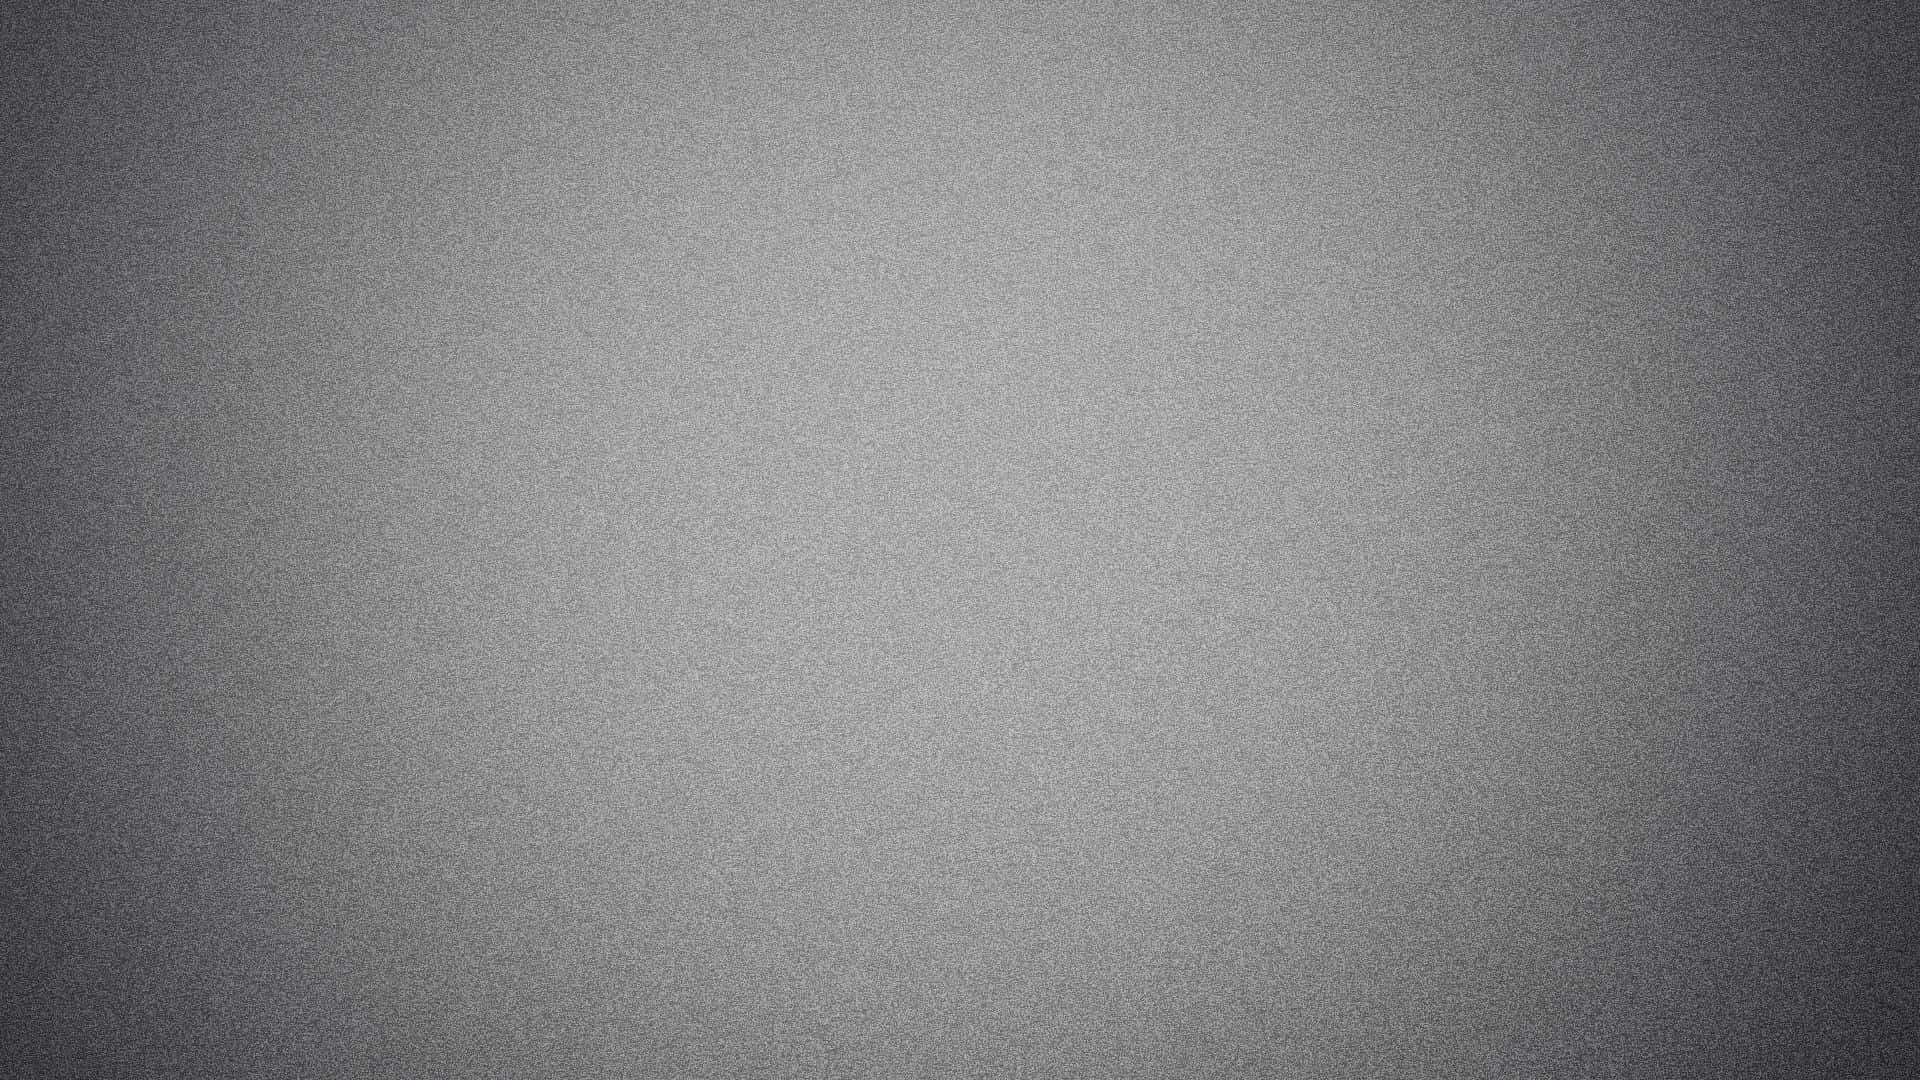 Smoky Light Gray Background